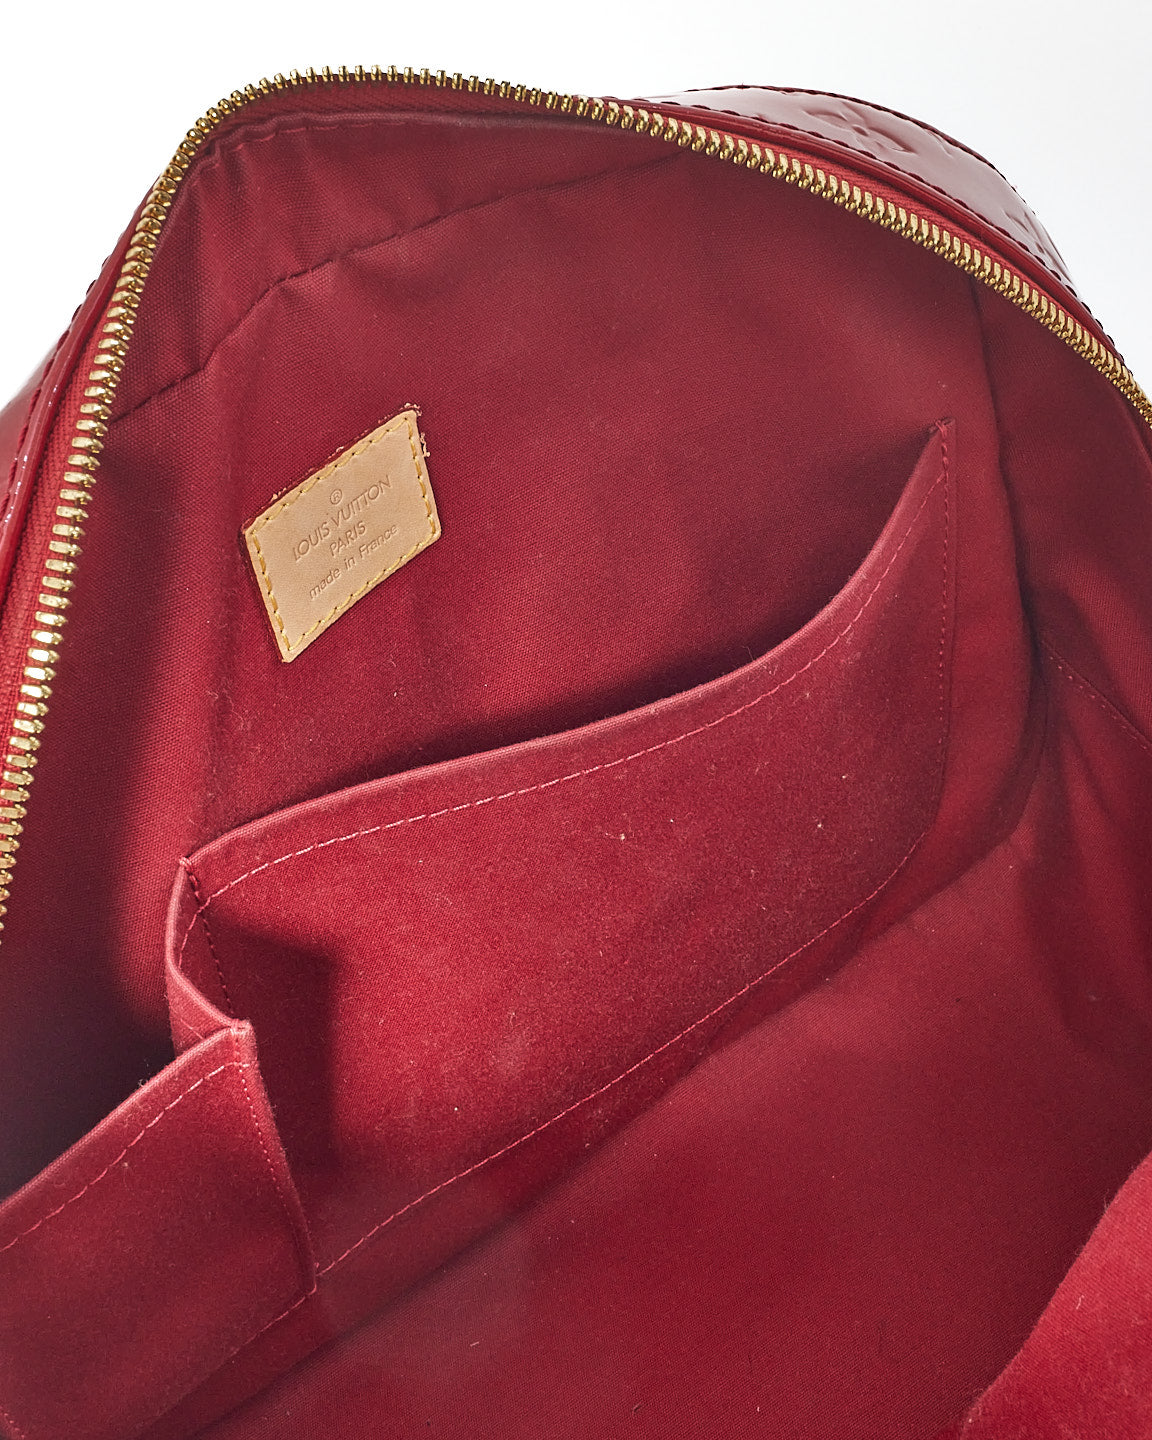 Louis Vuitton Rouge Pomme D'Amour Vernis Summit Drive Top Handle Bag